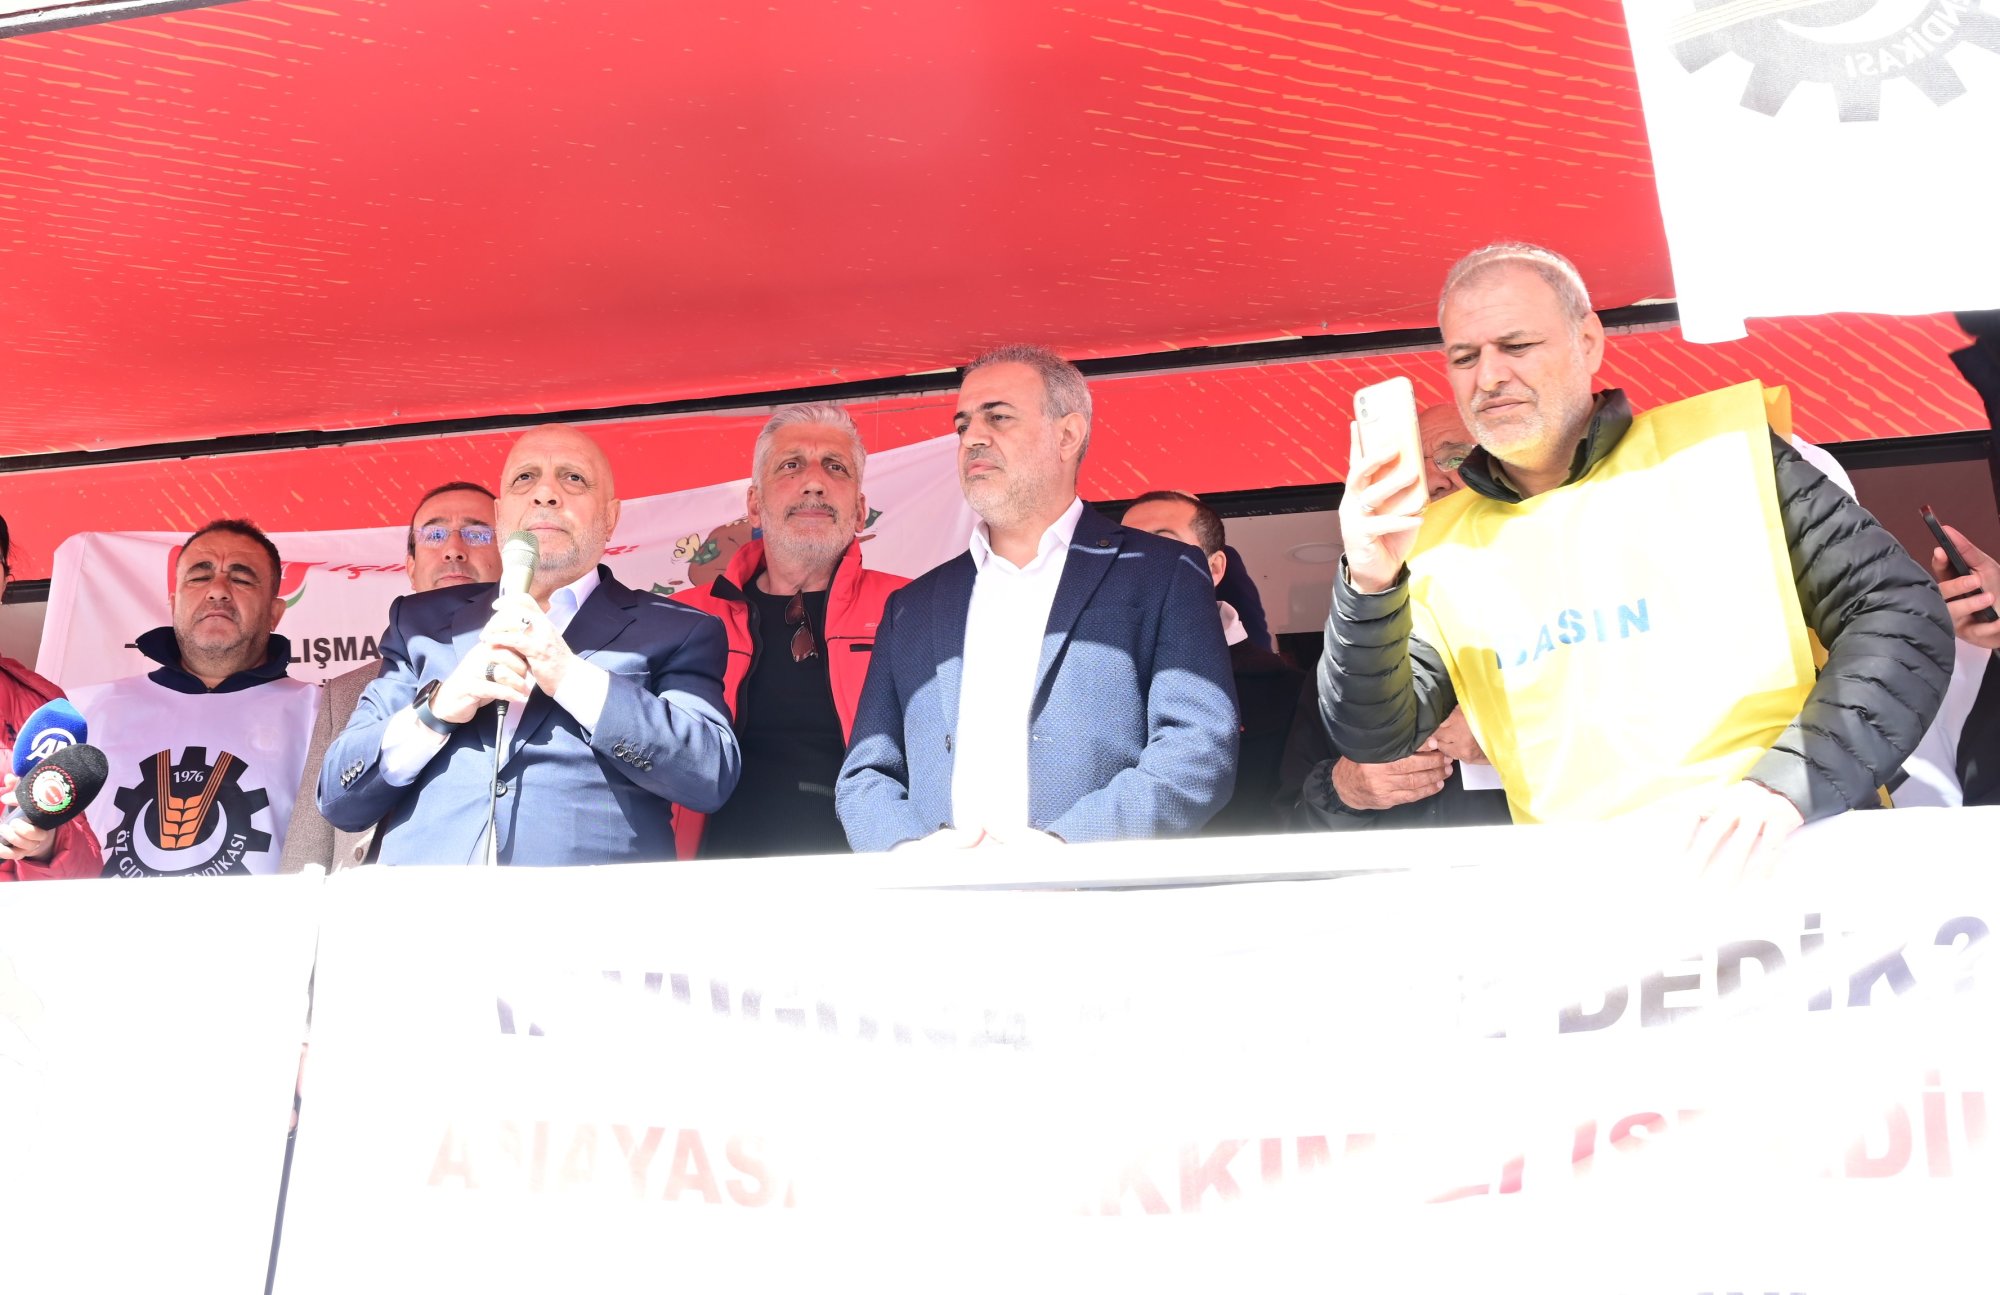 Hak- Genel Bakan Arslandan Grevdeki Lezita ilerine Destek Ziyareti